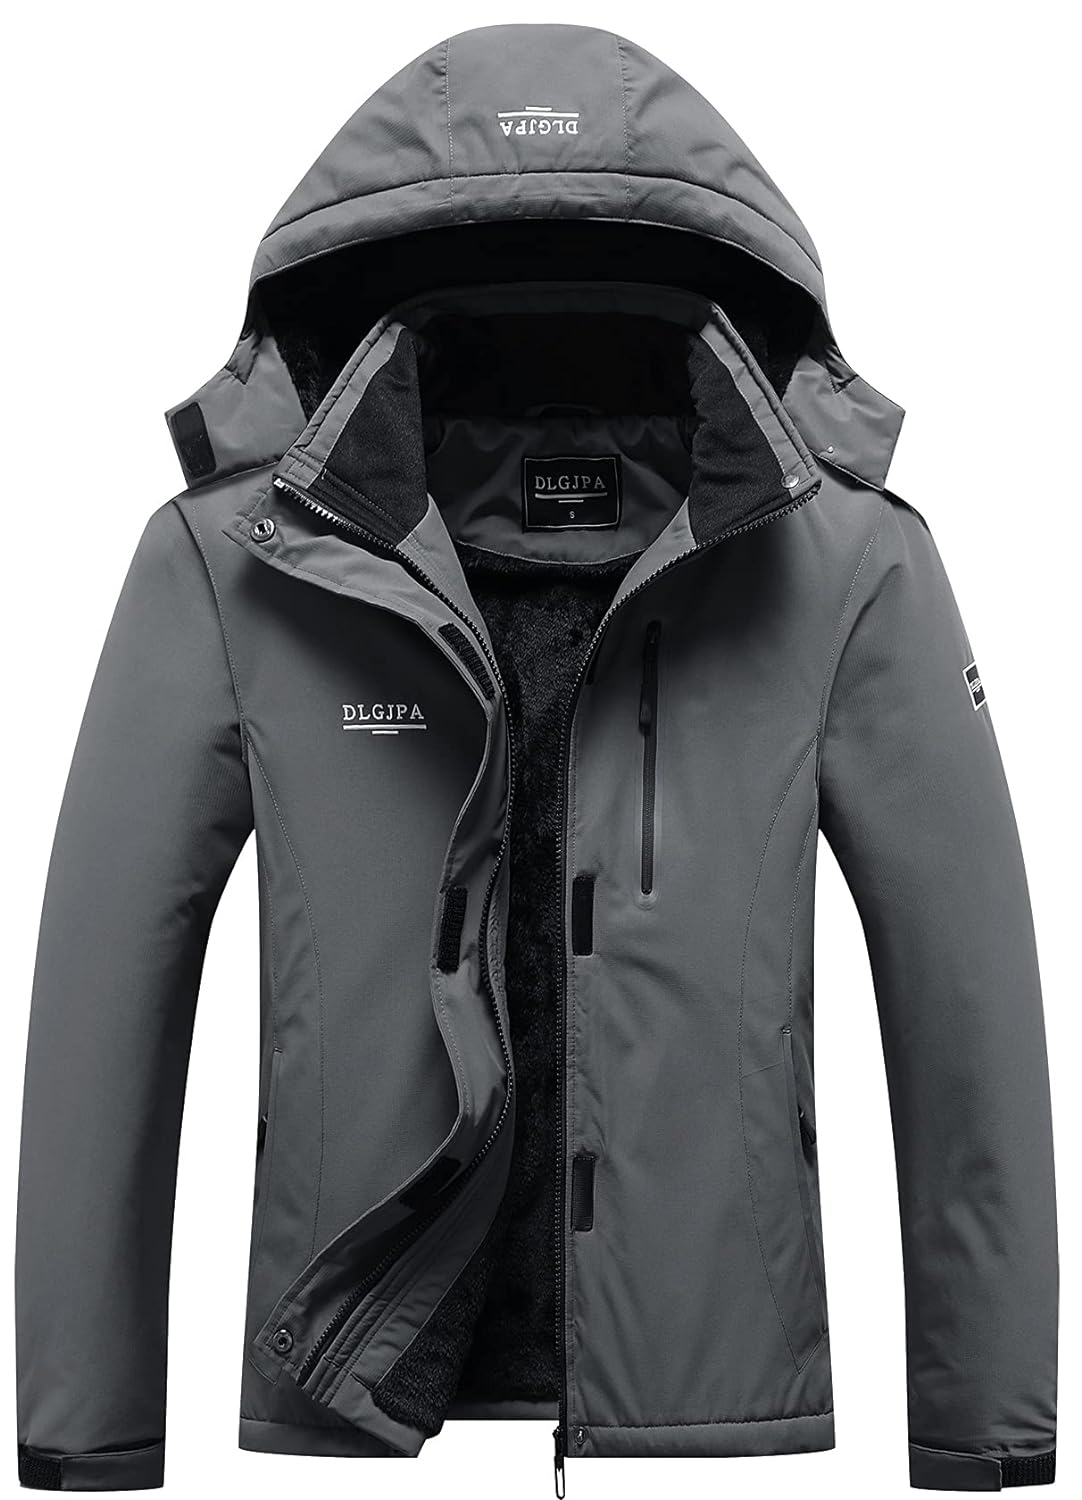 DLGJPA Women's Mountain Waterproof Ski Jacket Hooded Windbreakers Windproof Raincoat Winter Warm Snow Coat, Dark Grey, X-Large